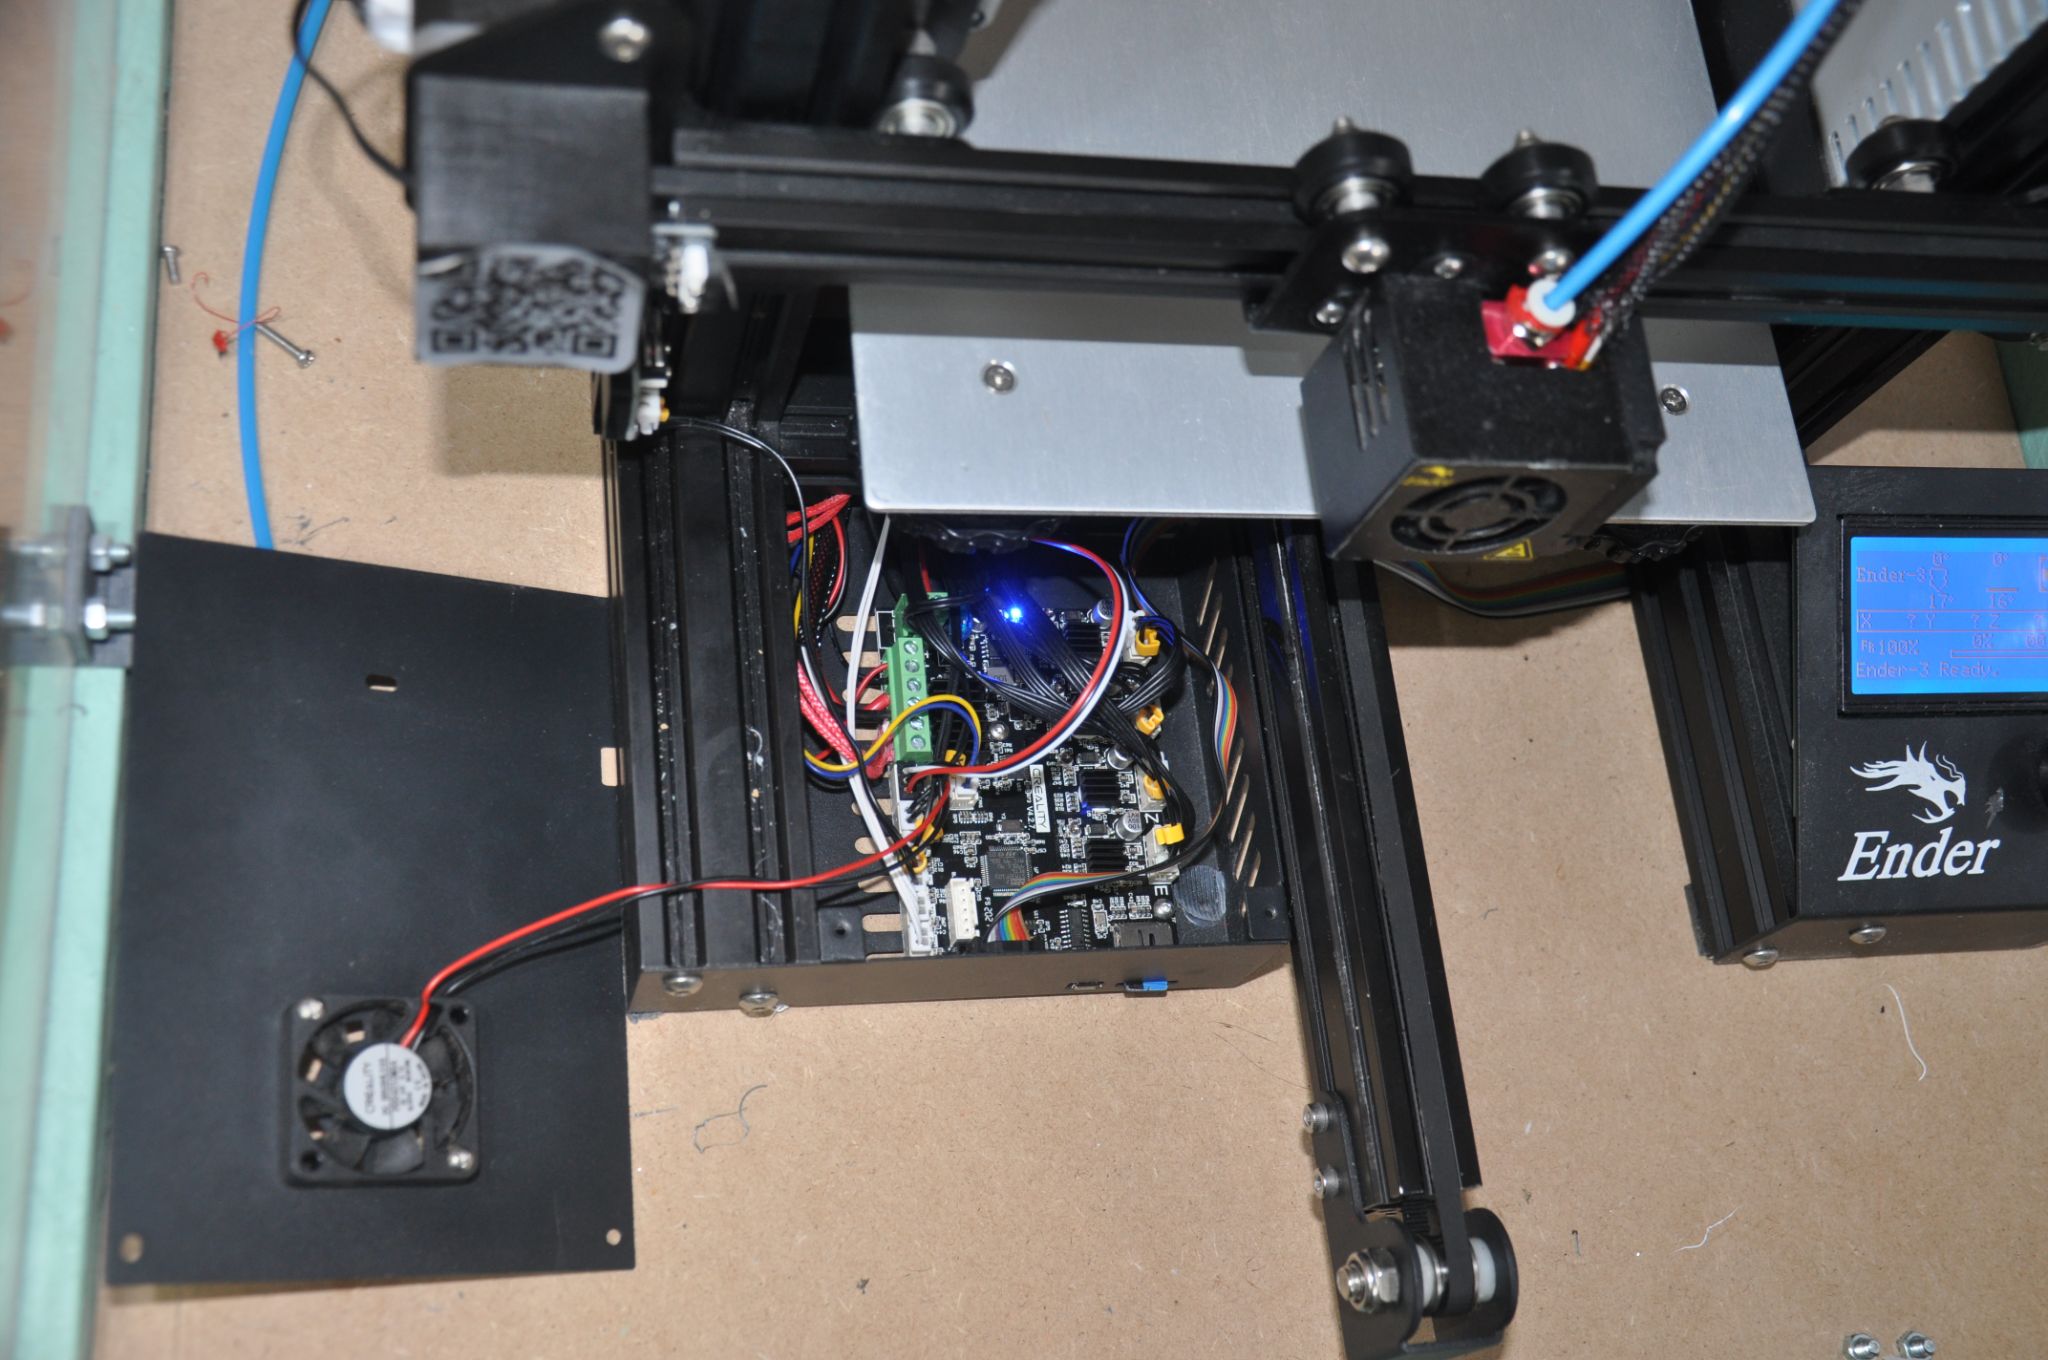 probléme installation detecteur de fin de filament sur carte mére creality  4.2.7 - Creality - Forum pour les imprimantes 3D et l'impression 3D